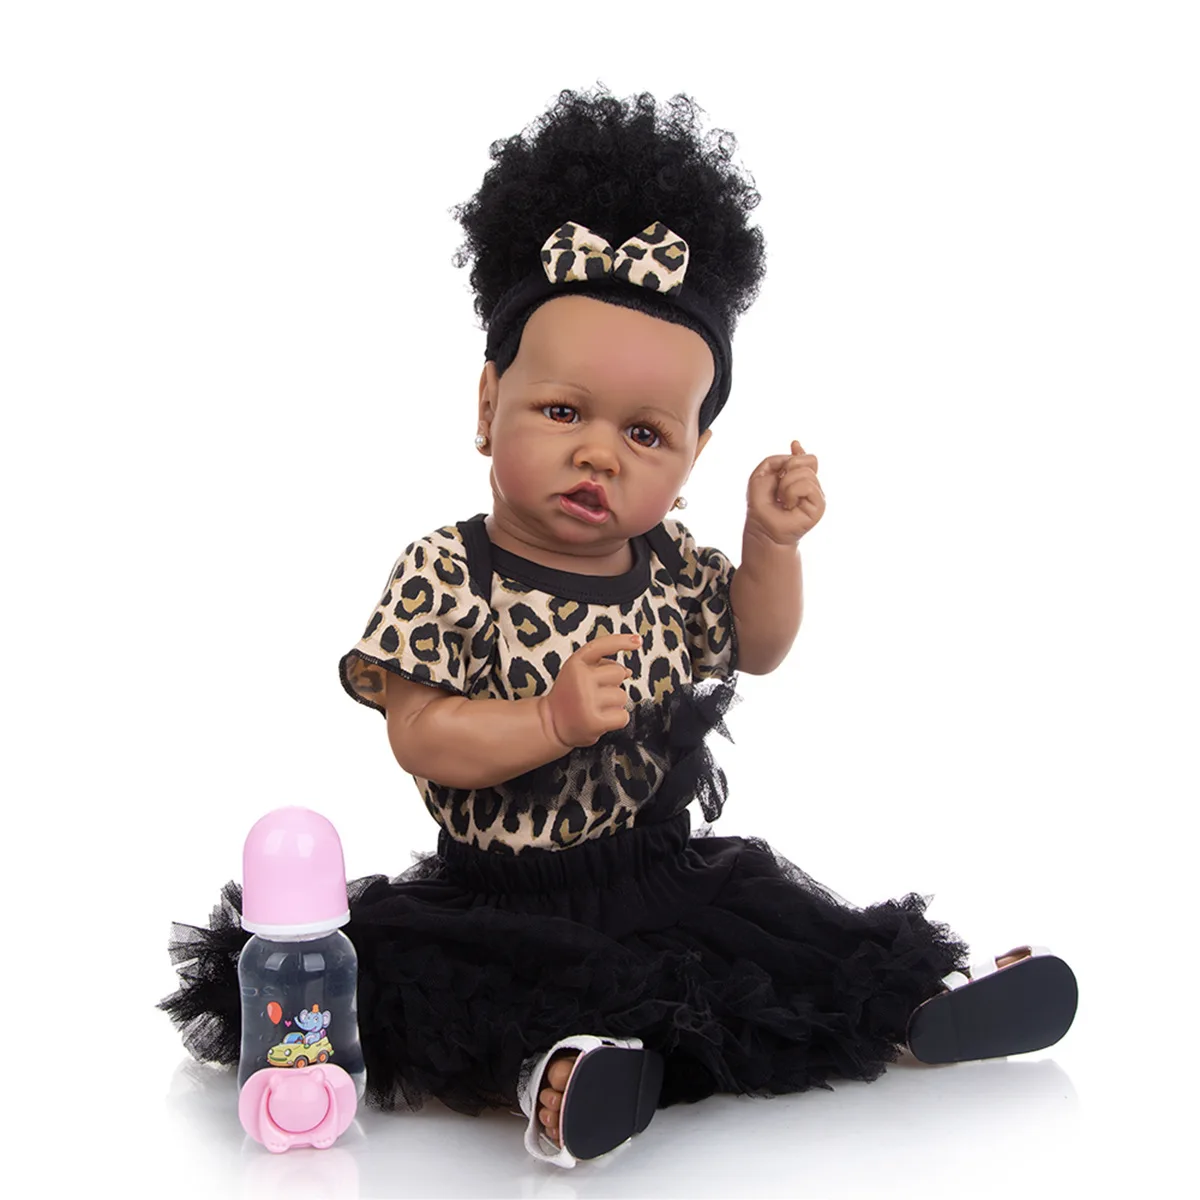 

Кукла-младенец Reborn из черной кожи, размер 22 дюйма, 55 см, полностью силиконовая, с искривленным ртом